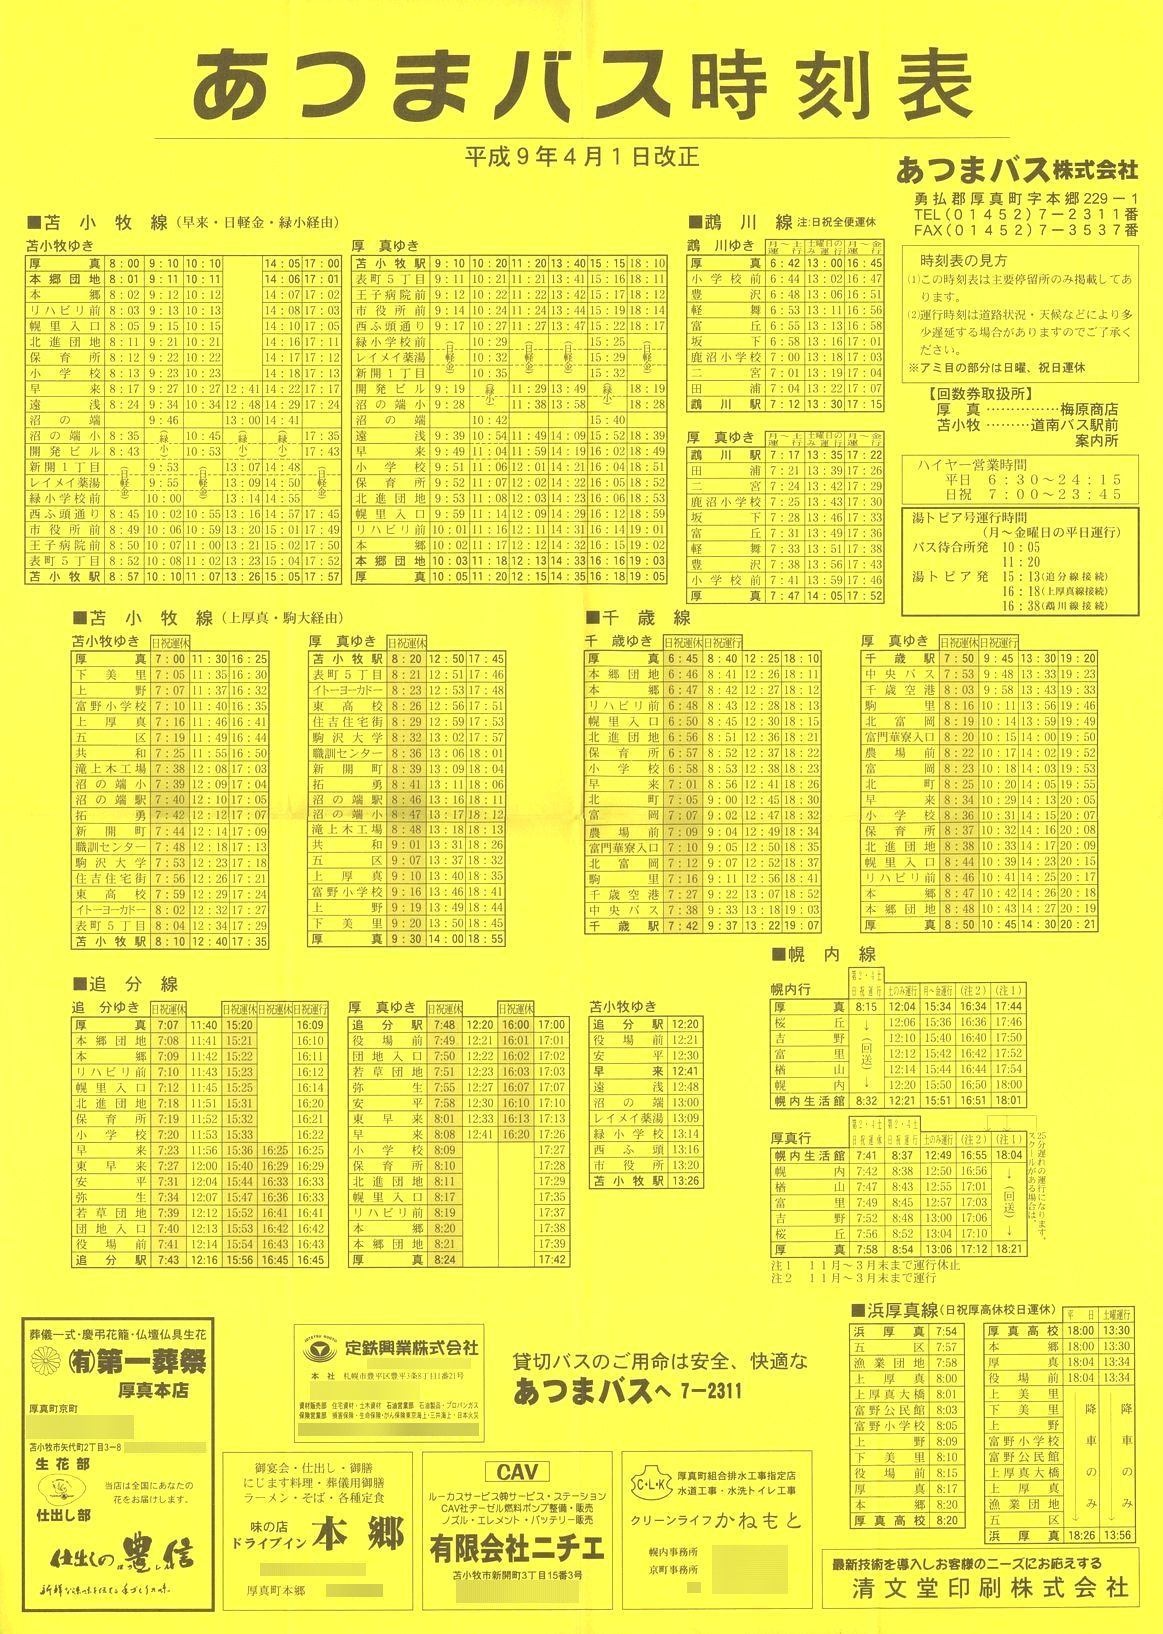 1997-04-01改正_あつまバス_時刻表